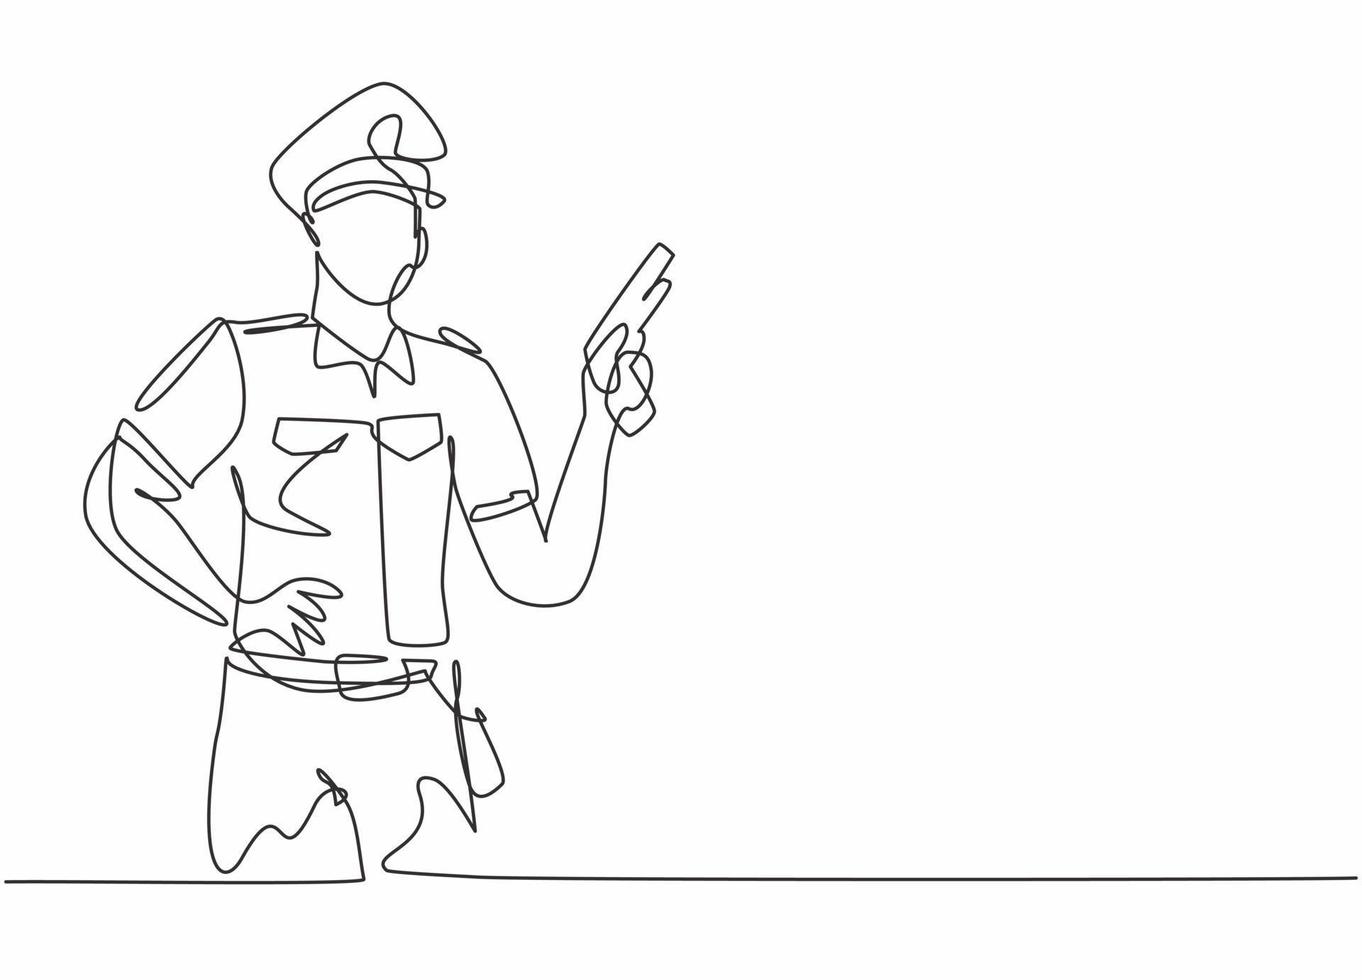 Kontinuierliche einzeilige Zeichnung eines jungen Polizisten, der Uniform trägt und eine Handrevolverpistole hält. professioneller Job Beruf minimalistisches Konzept. Einzeilige Zeichnung Design Vektorgrafik Illustration vektor